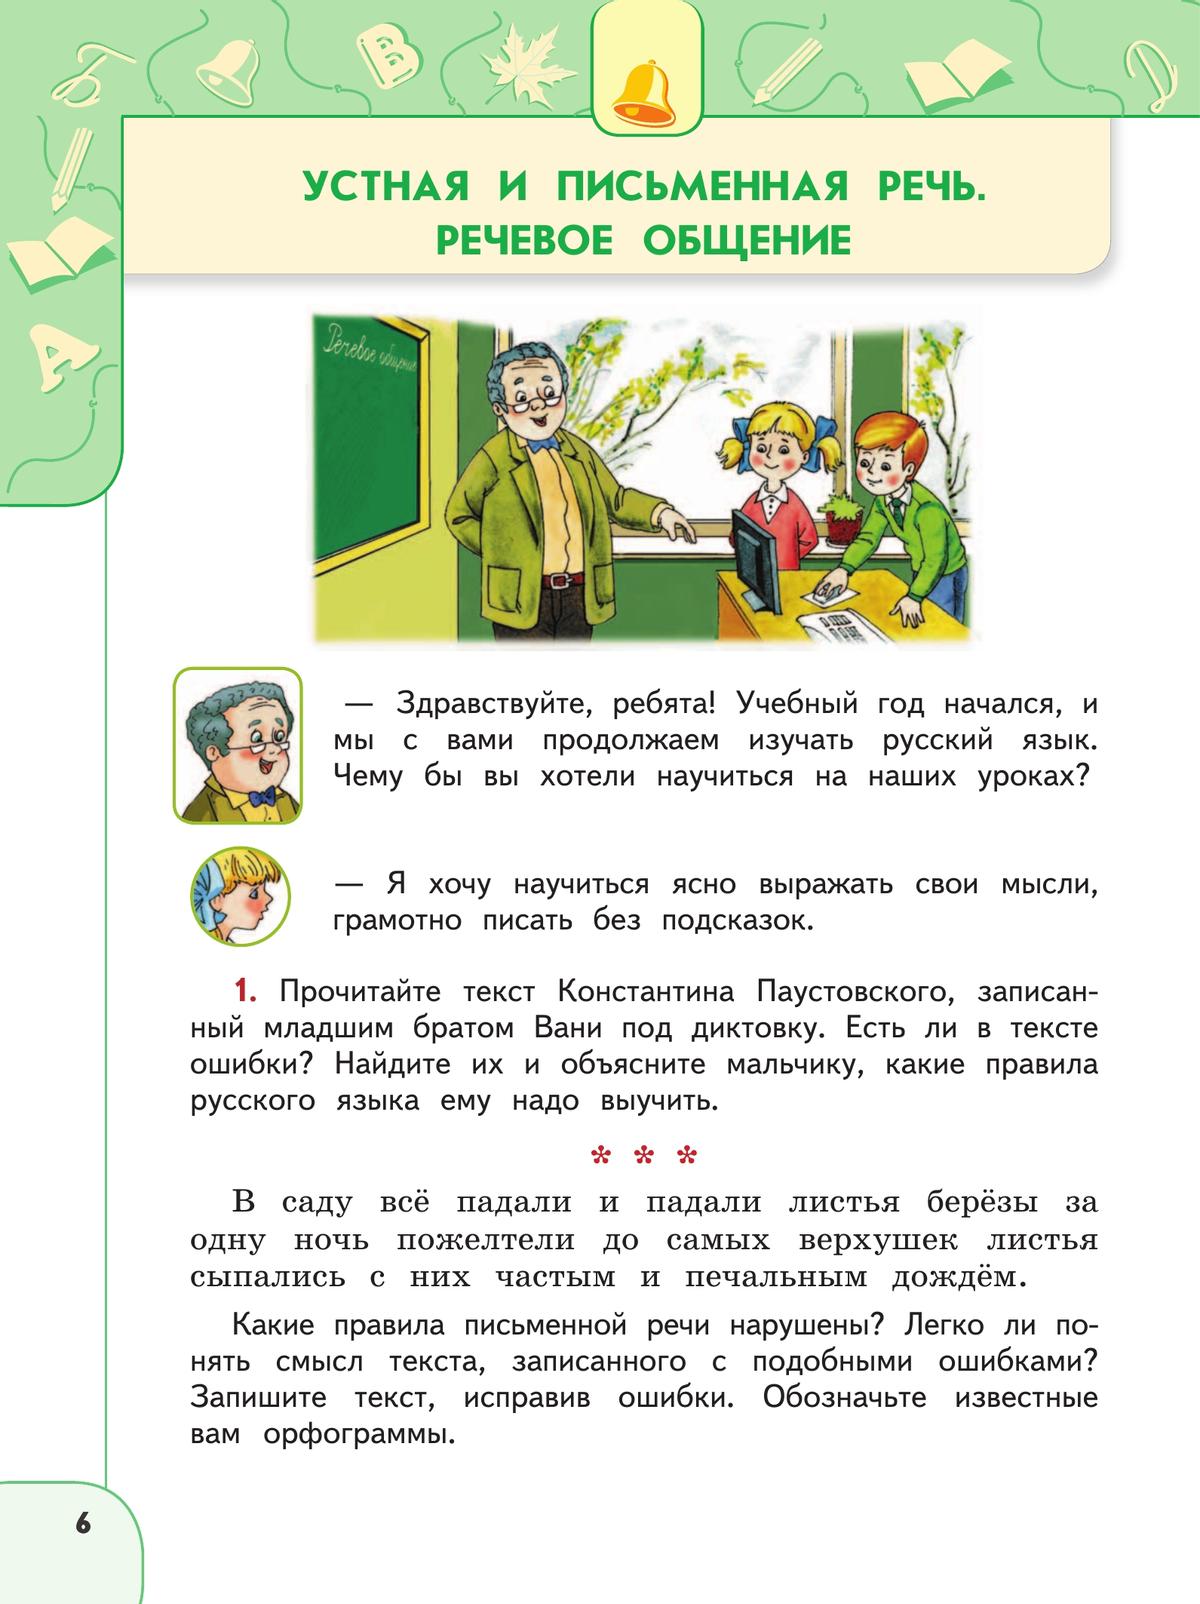 Русский язык. 4 класс. Учебник. В 2 ч. Часть 1 9